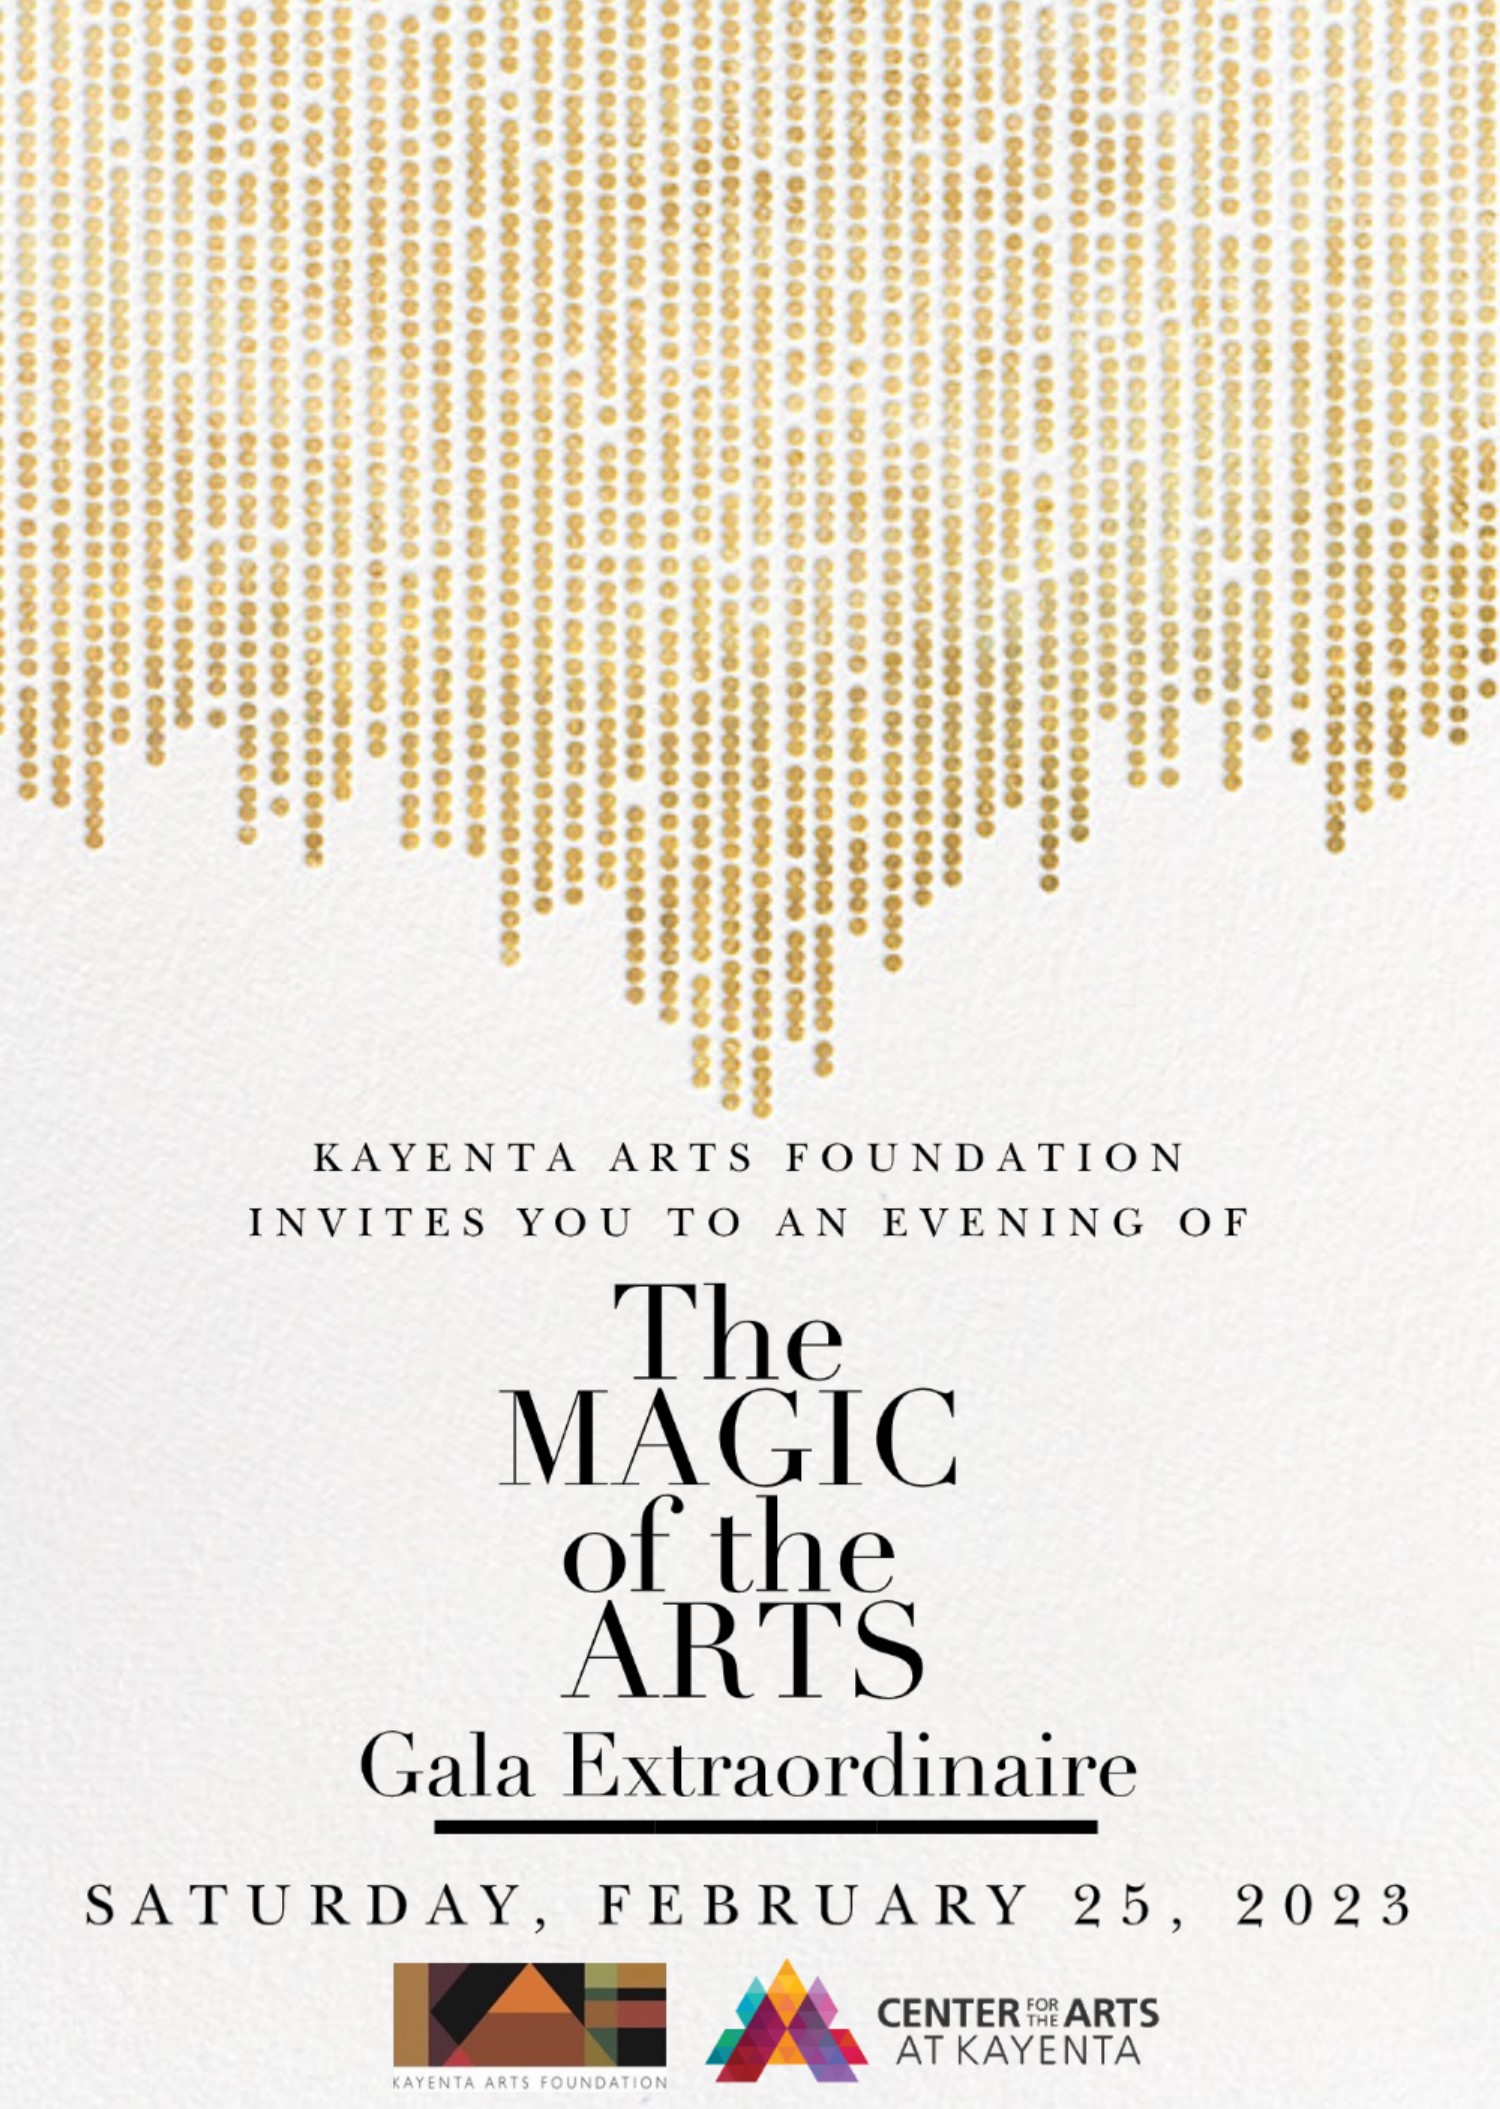 Gala Invite